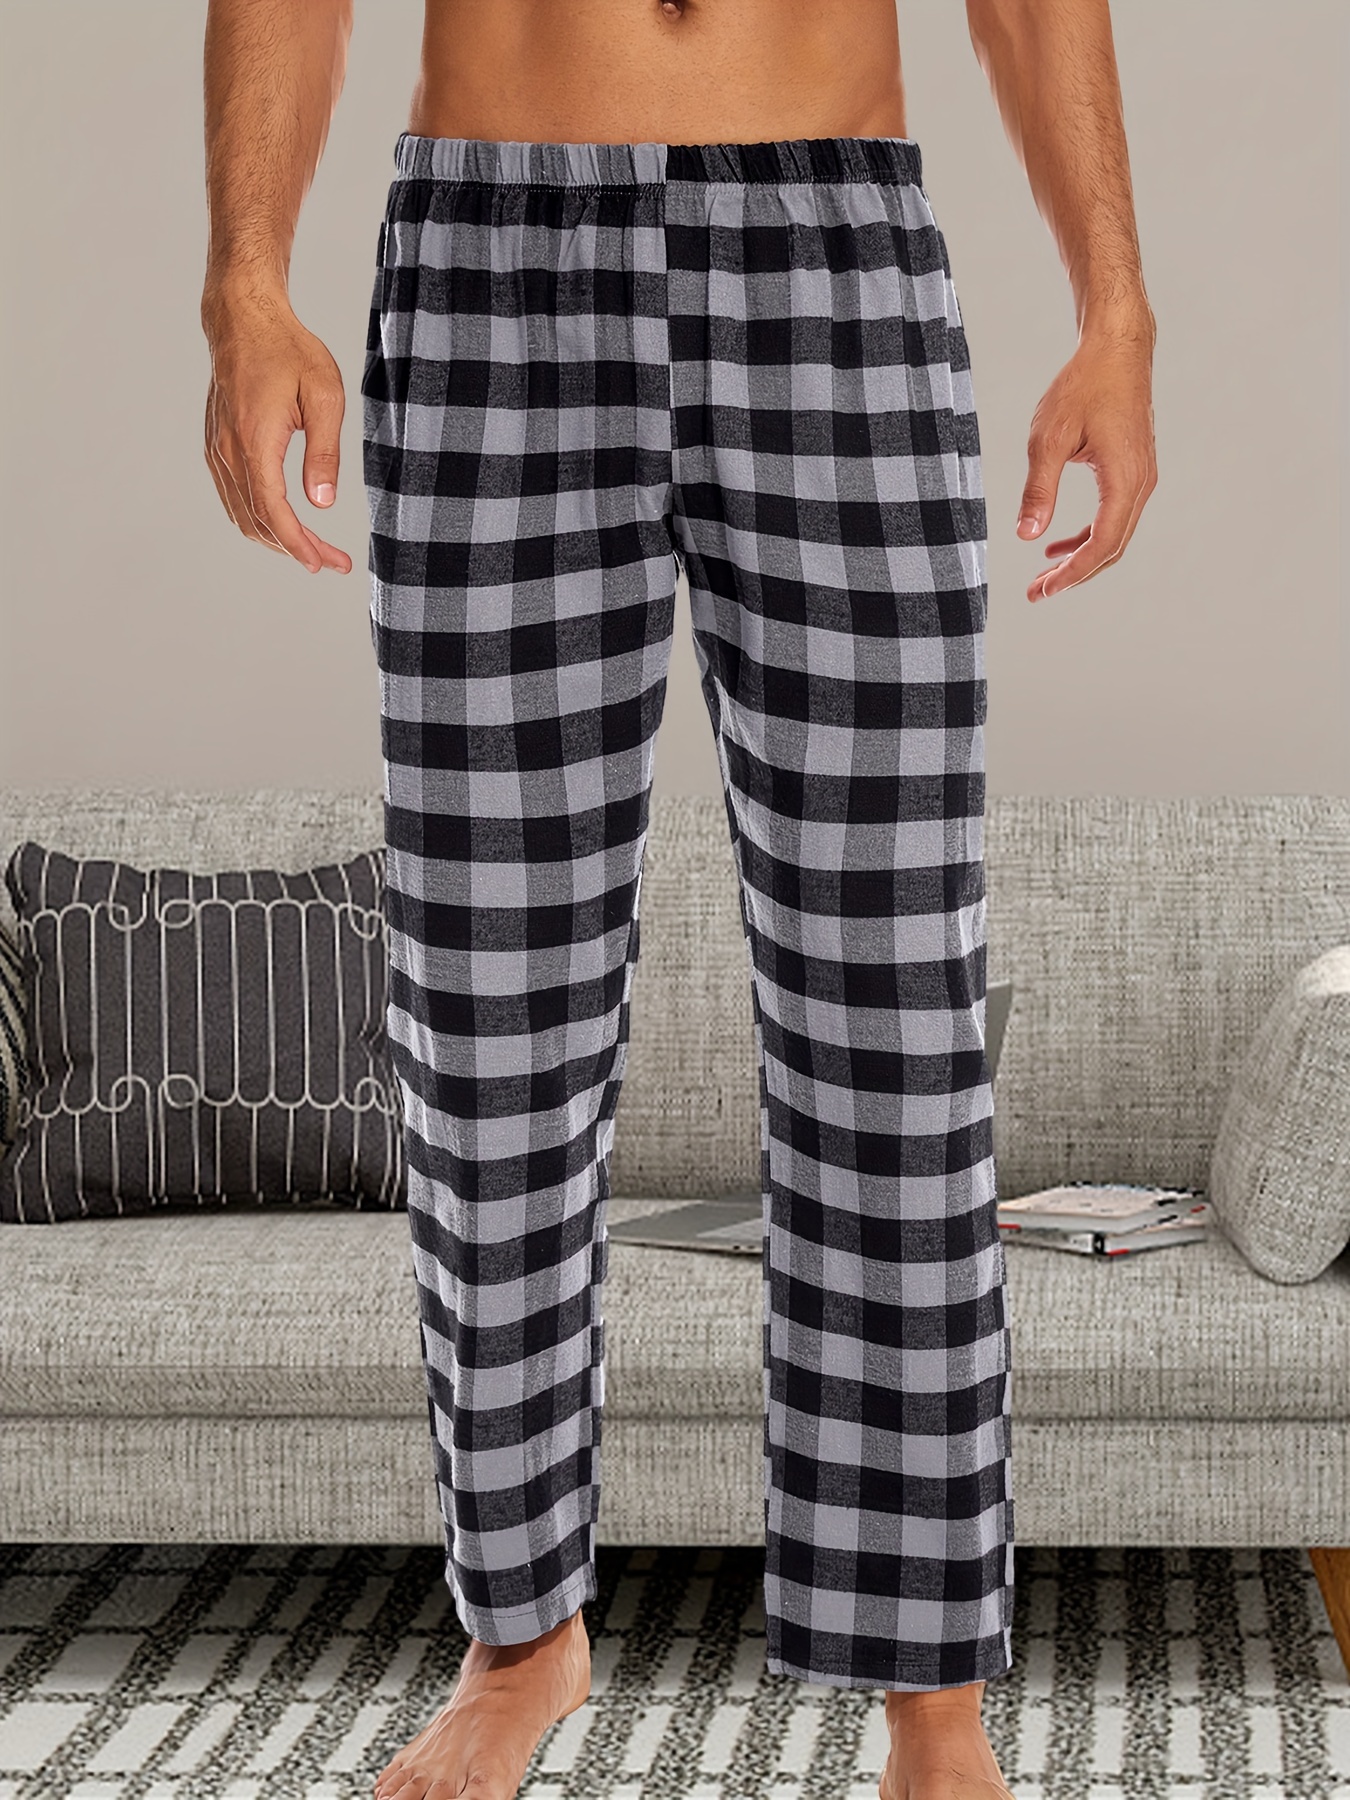 Home pajama pants